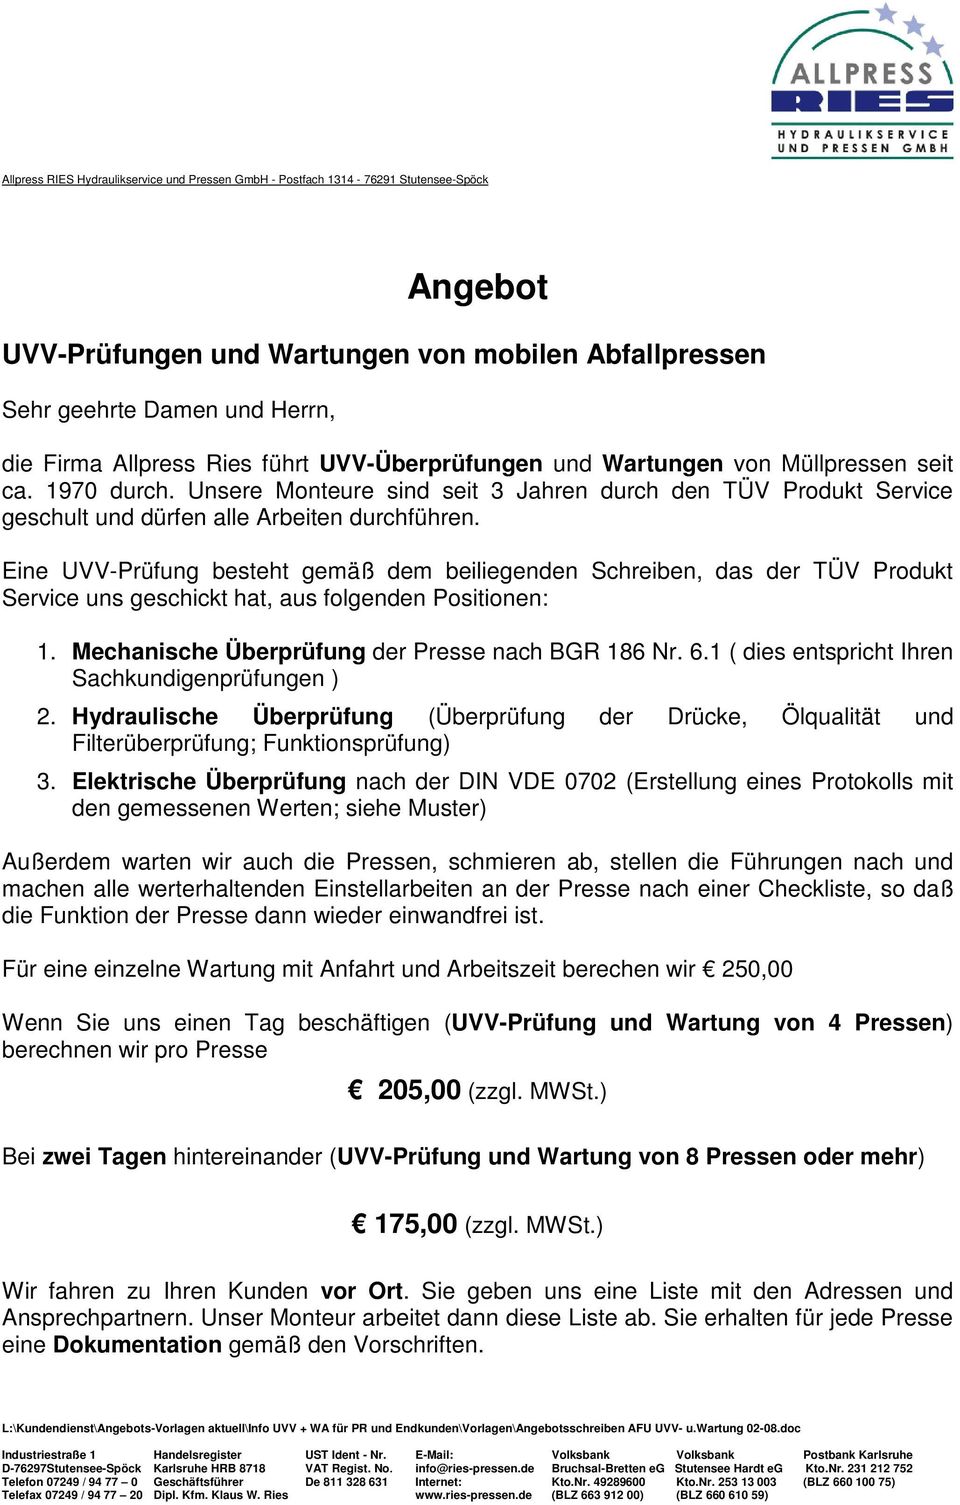 Eine UVV-Prüfung besteht gemäß dem beiliegenden Schreiben, das der TÜV Produkt Service uns geschickt hat, aus folgenden Positionen: 1. Mechanische Überprüfung der Presse nach BGR 186 Nr. 6.